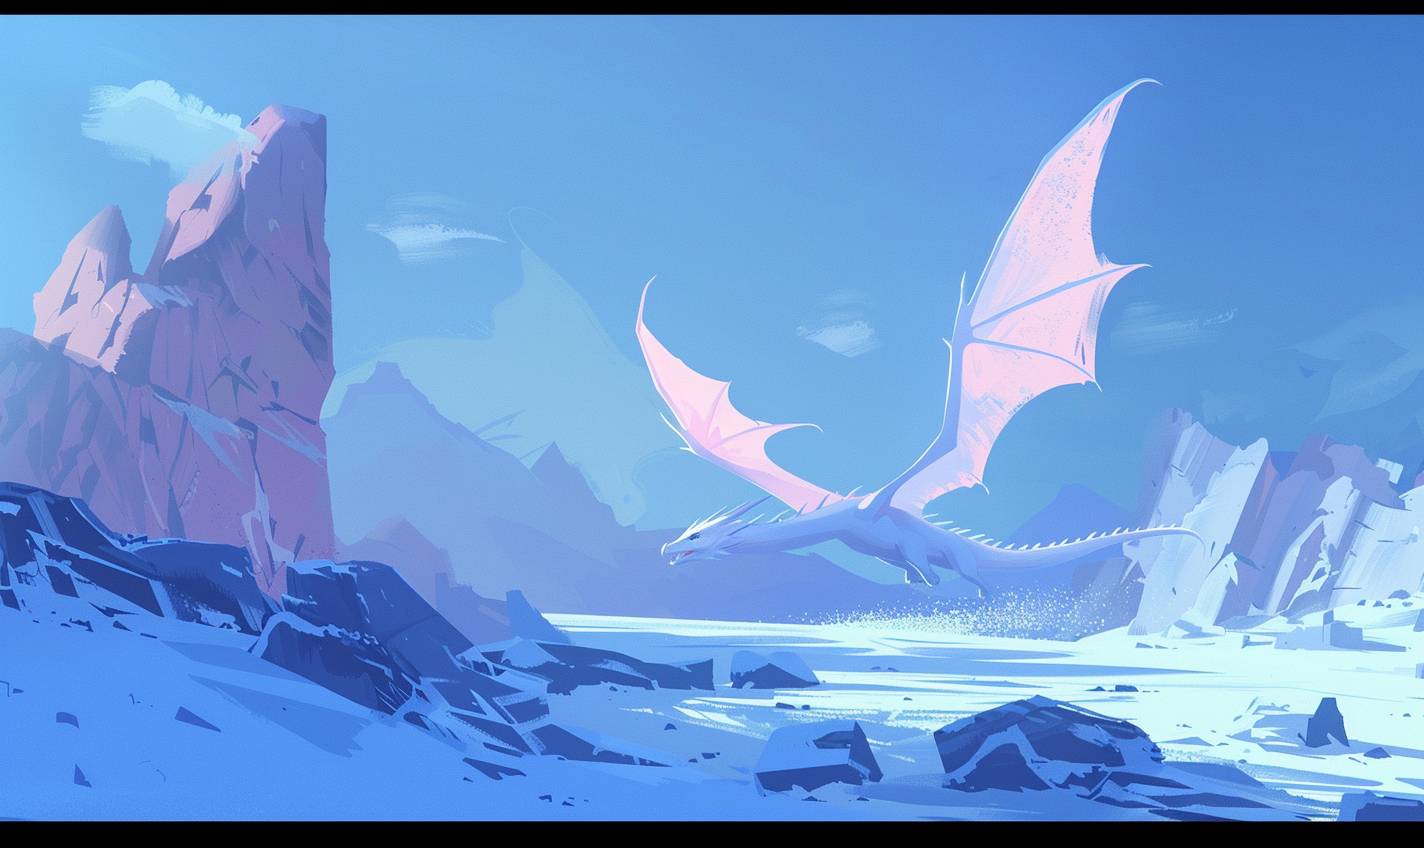 ジャン・ジュリアンのスタイルで、凍った風景の上を飛び回るアイスドラゴン